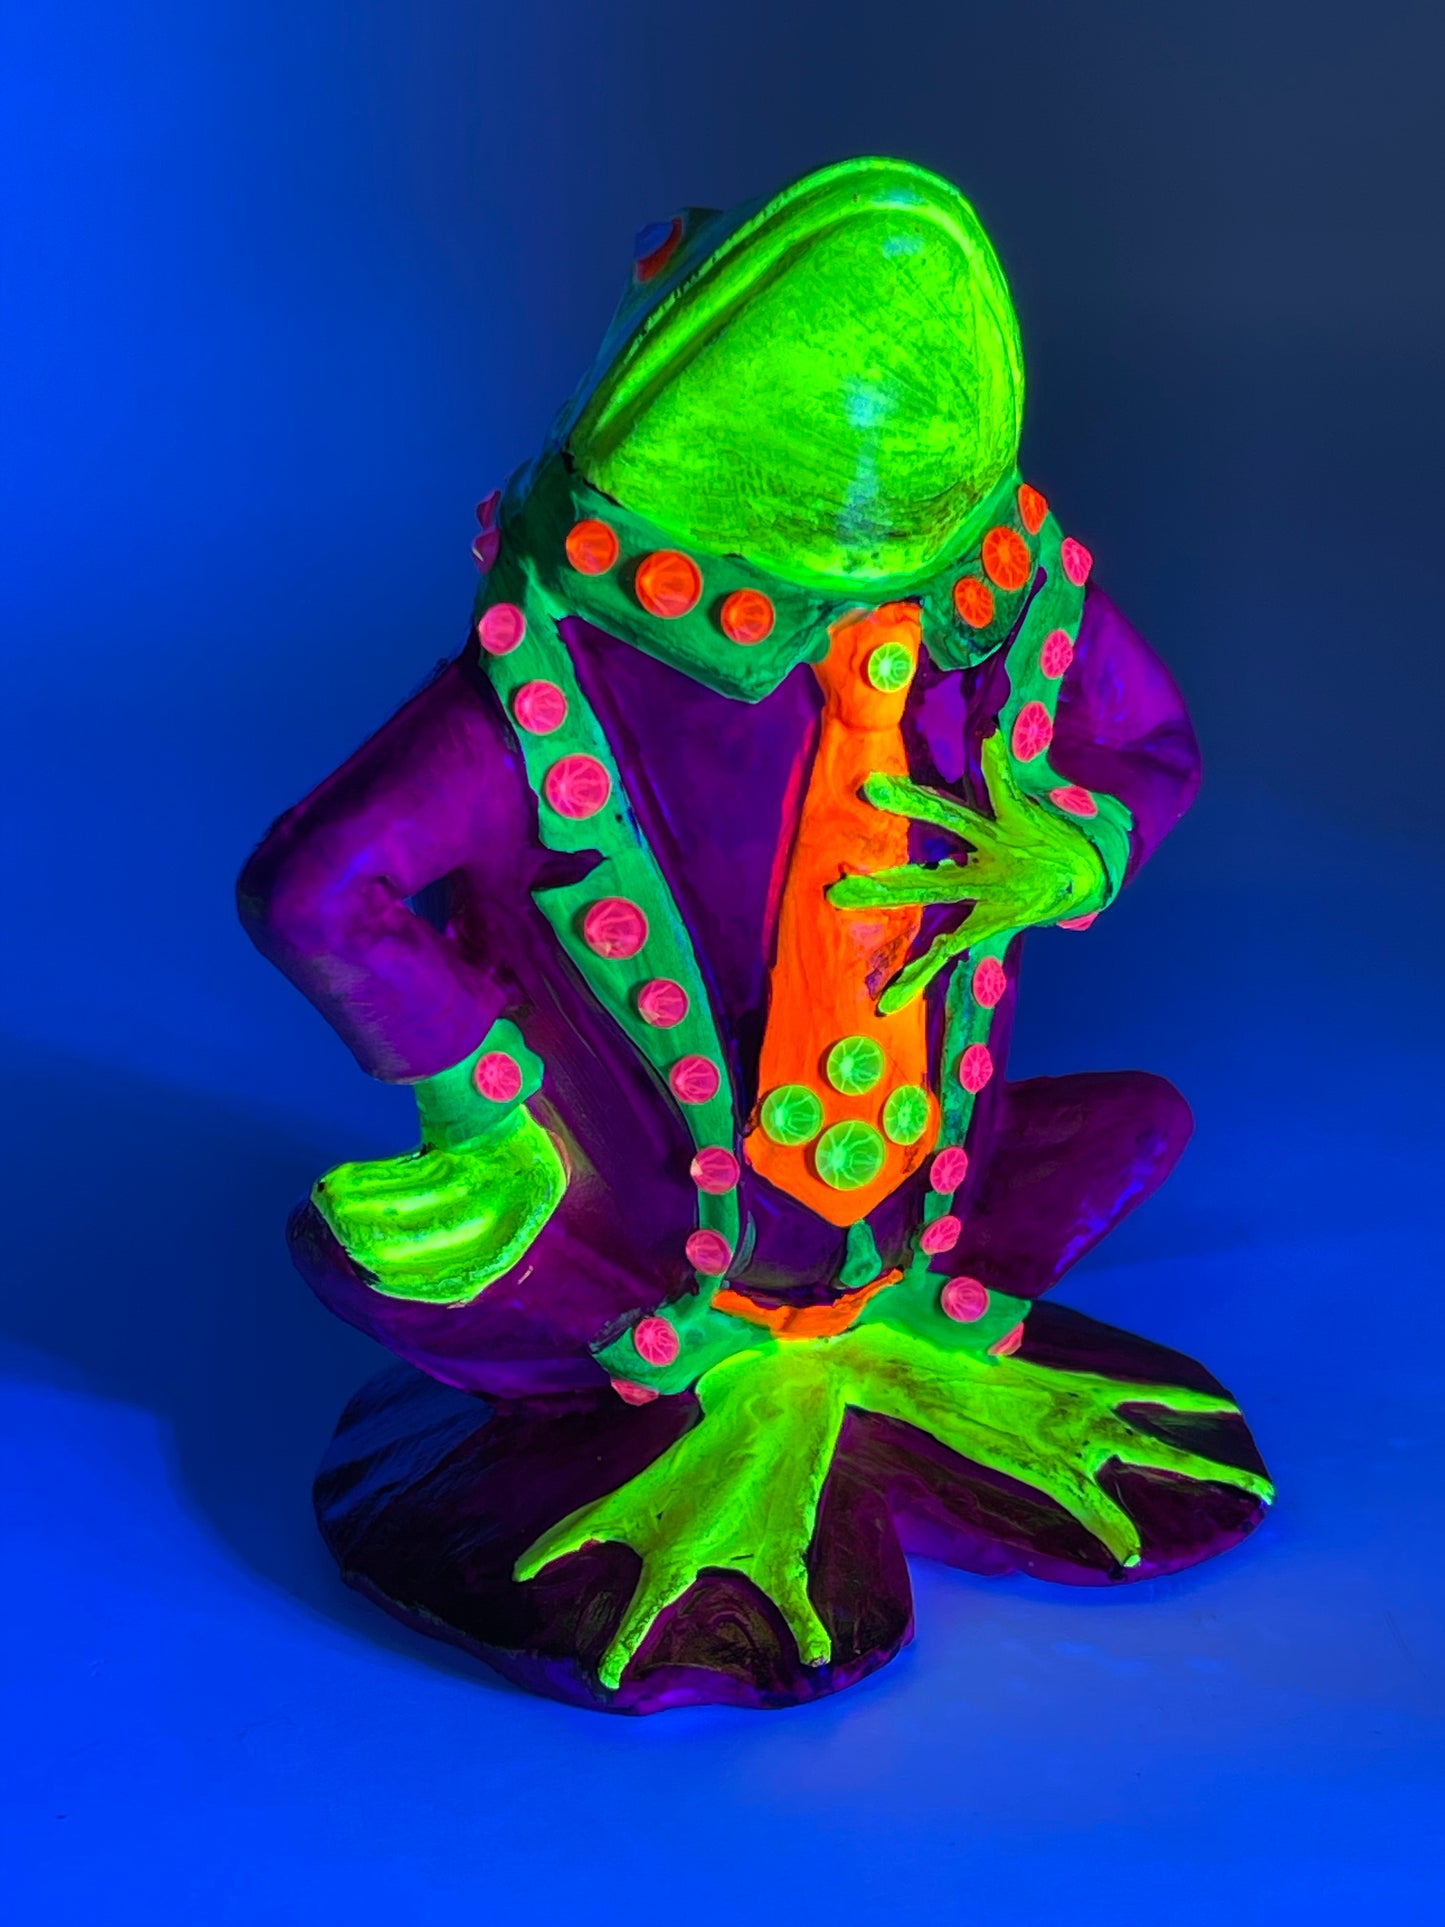 Mister Frog’s Formal Wear